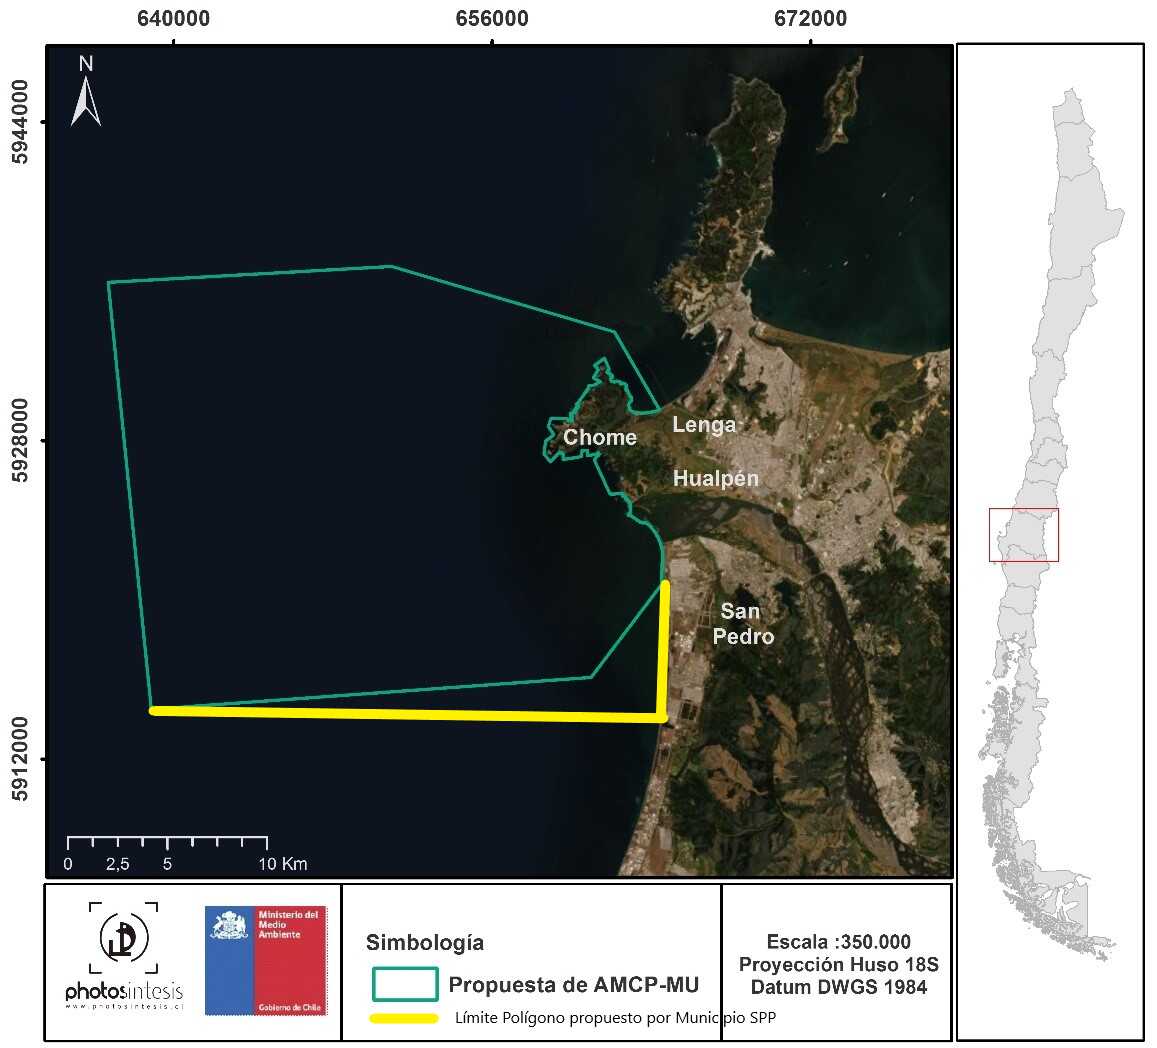 Prohibiendo actividades industriales en la zona municipio solicita protección de borde costero sampedrino